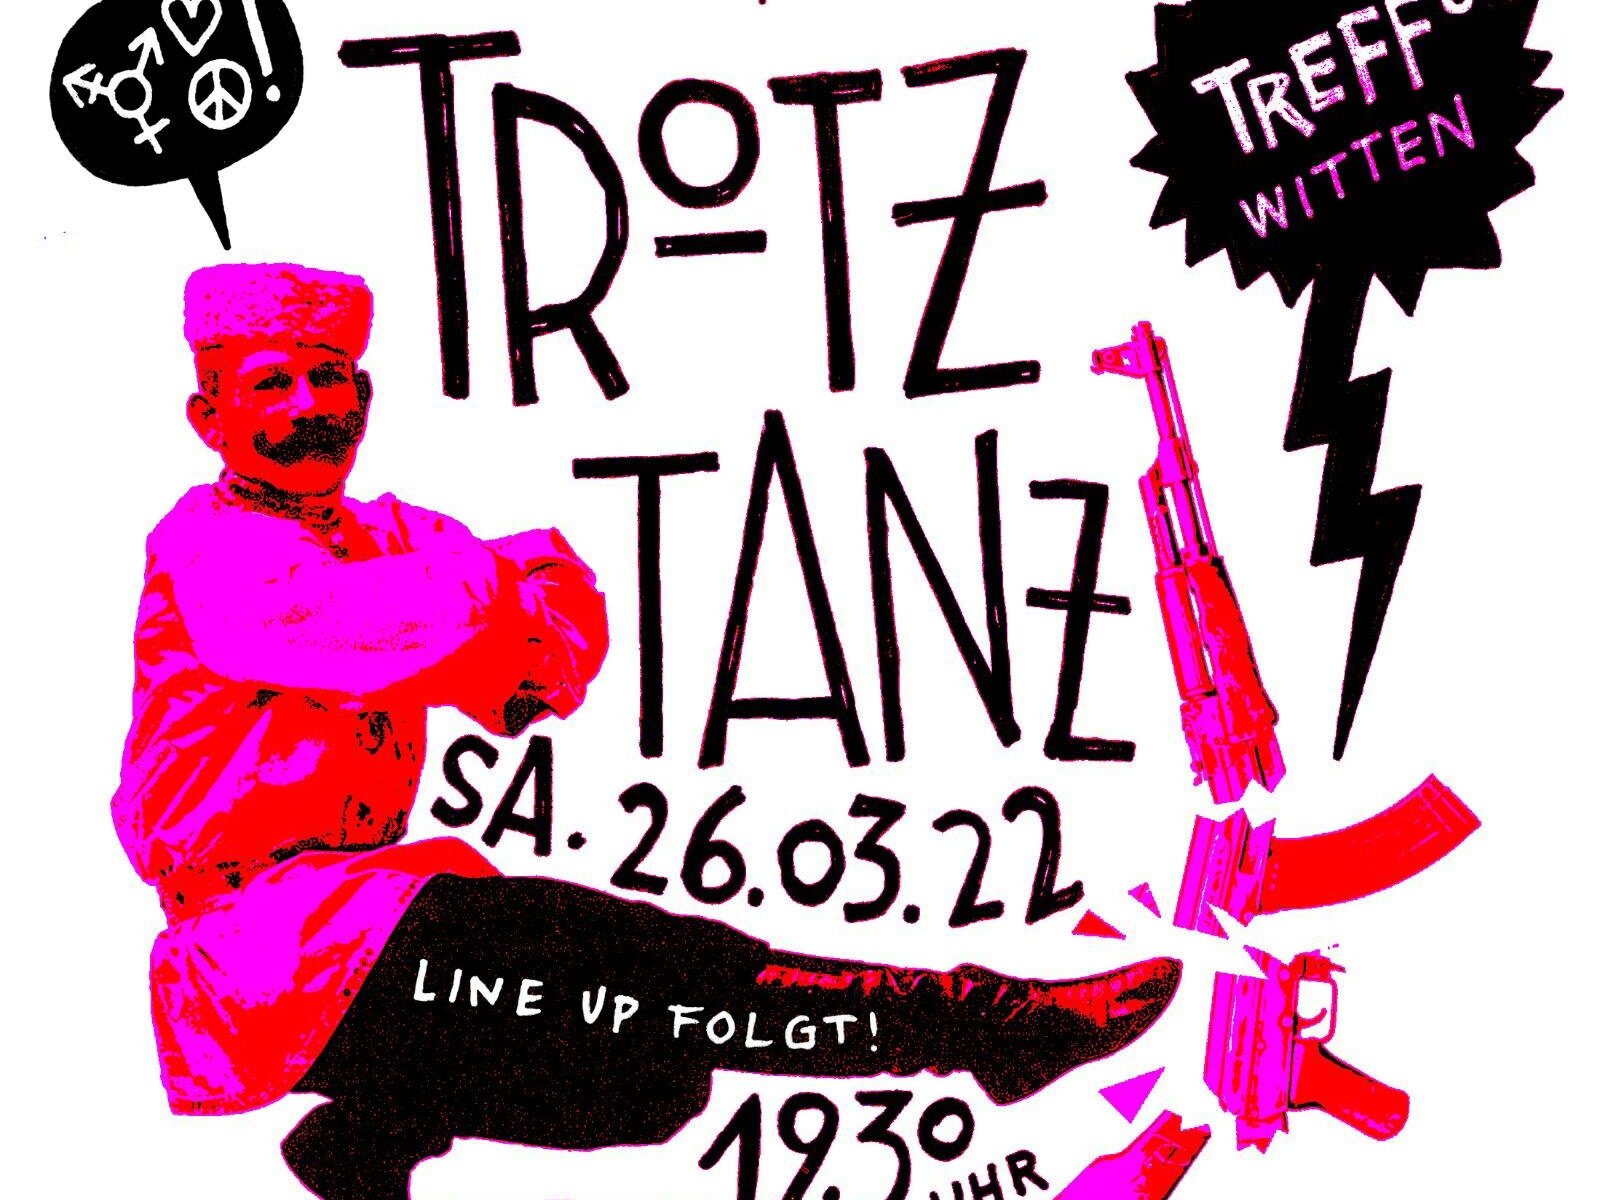 Plakat: Trotz Allem präsentiert: Trotz-Tanz; Samstag 26. März 2022, Treff° Witten, 19:30 Uhr